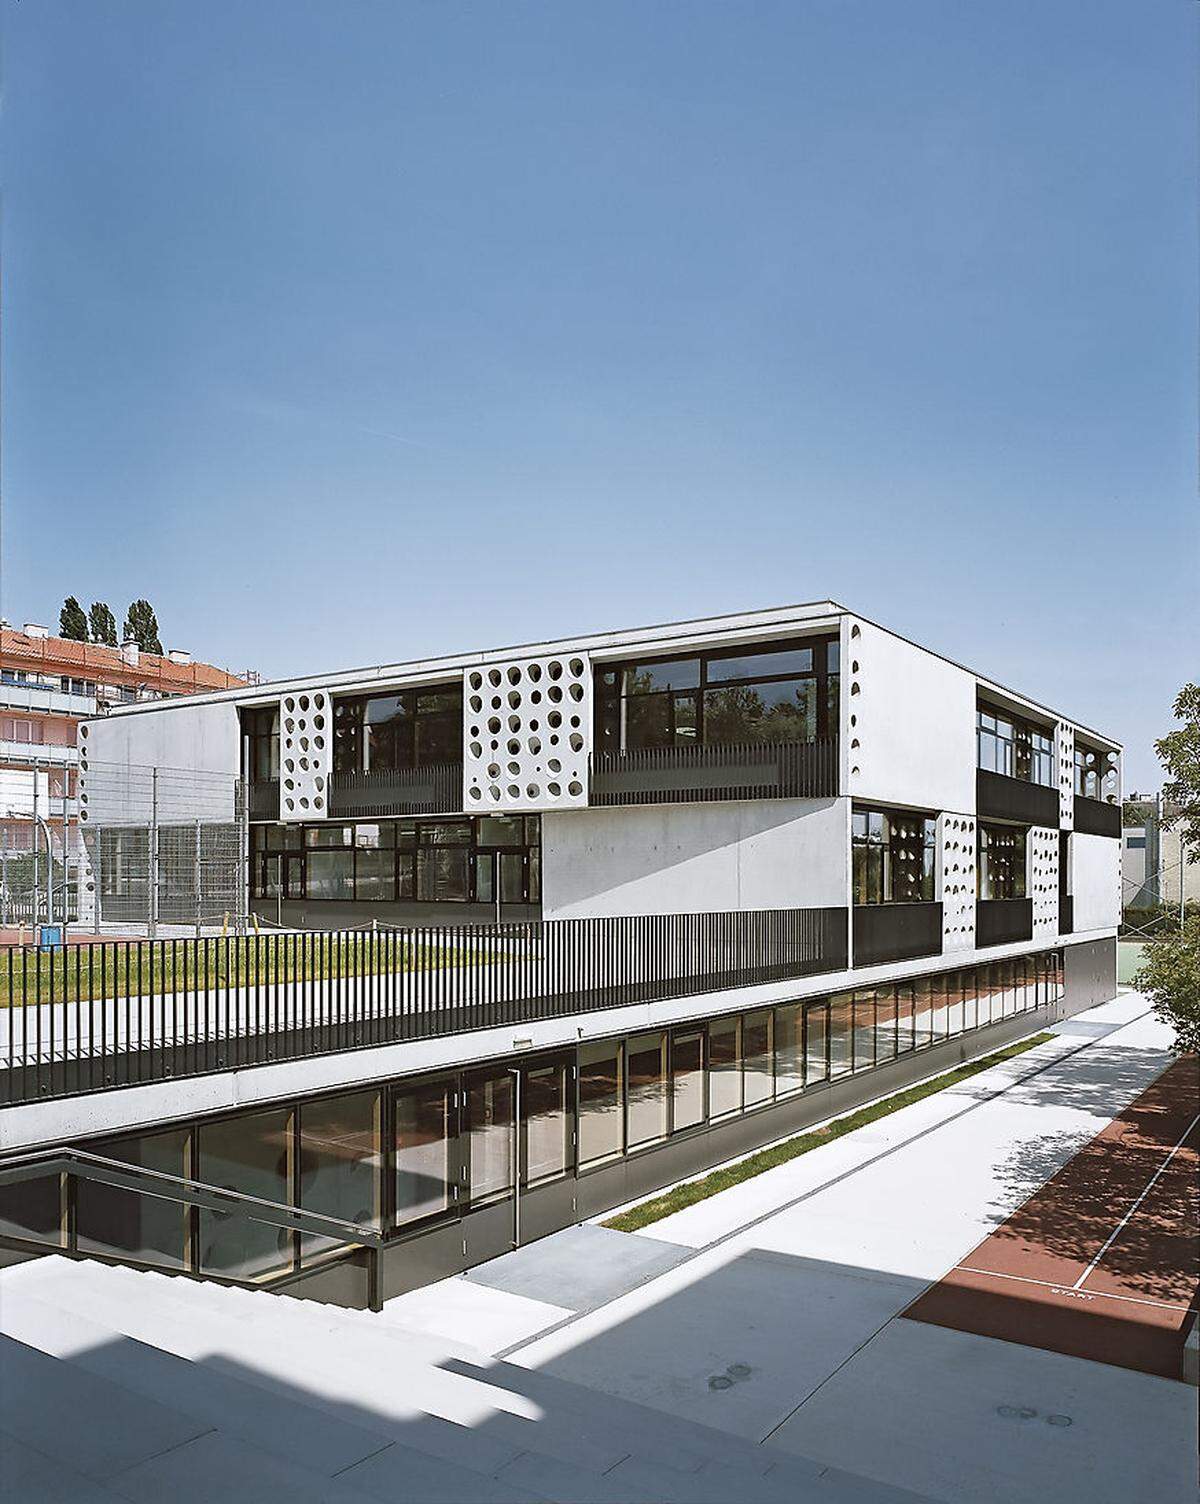 Wien möchte mit der Neulandschule Grinzing punkten. Der Verein Neulandschulsiedlung hat als Bauherr Eidenböck Architekten aus Wien mit der Realisierung beauftragt.